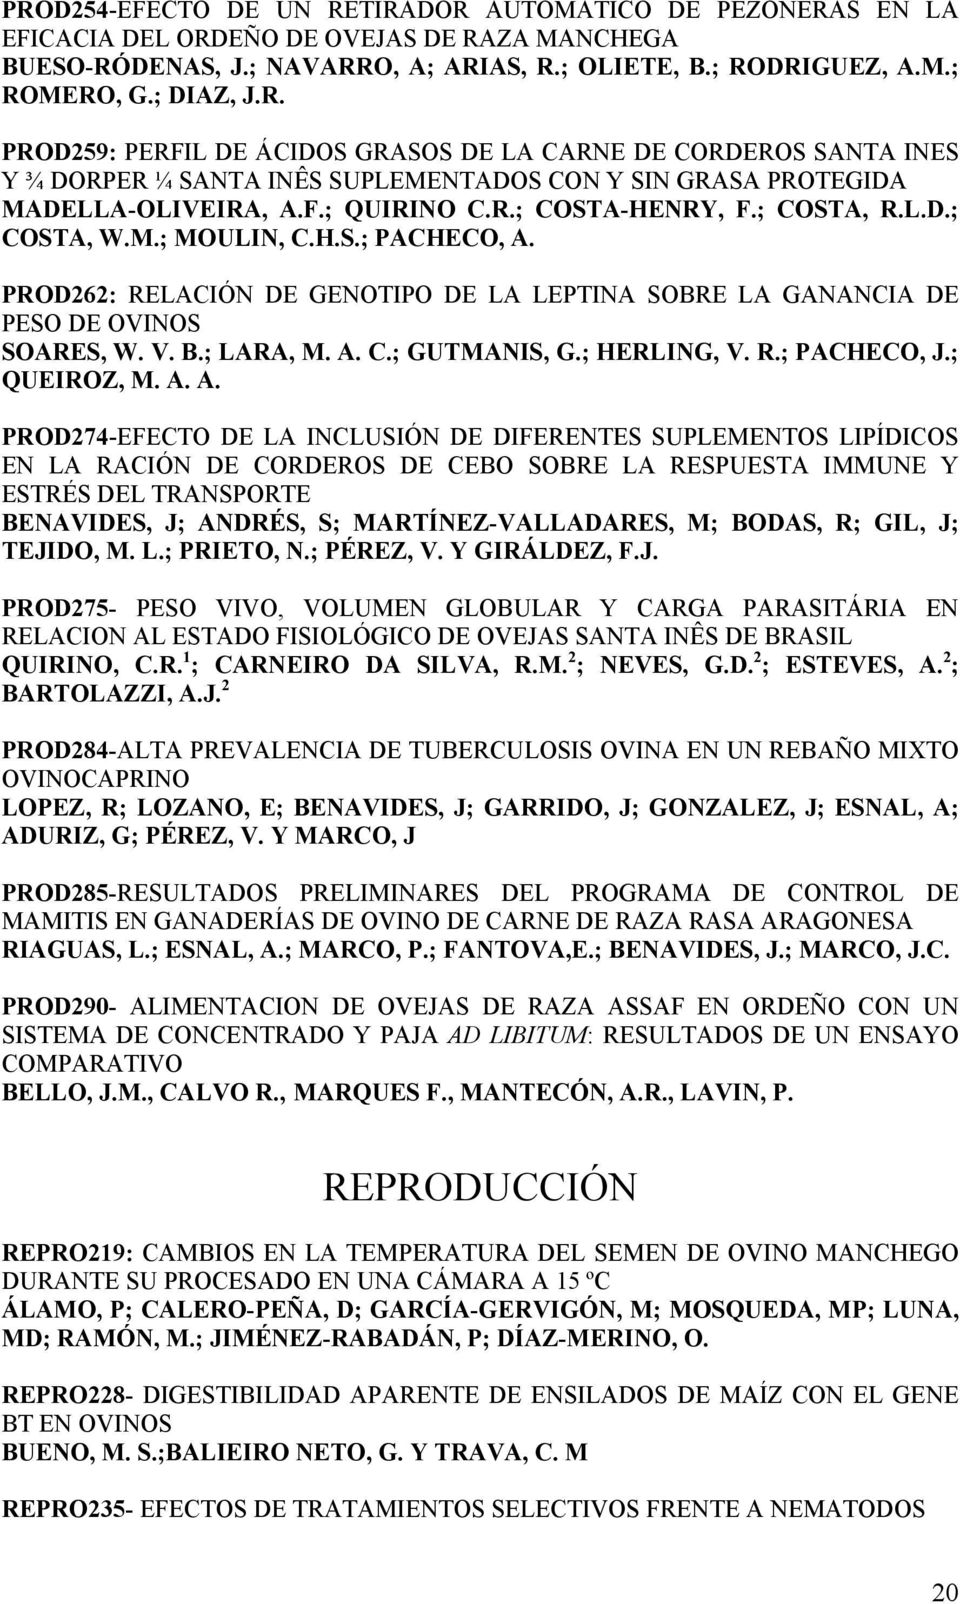 L.D.; COSTA, W.M.; MOULIN, C.H.S.; PACHECO, A. PROD262: RELACIÓN DE GENOTIPO DE LA LEPTINA SOBRE LA GANANCIA DE PESO DE OVINOS SOARES, W. V. B.; LARA, M. A. C.; GUTMANIS, G.; HERLING, V. R.; PACHECO, J.